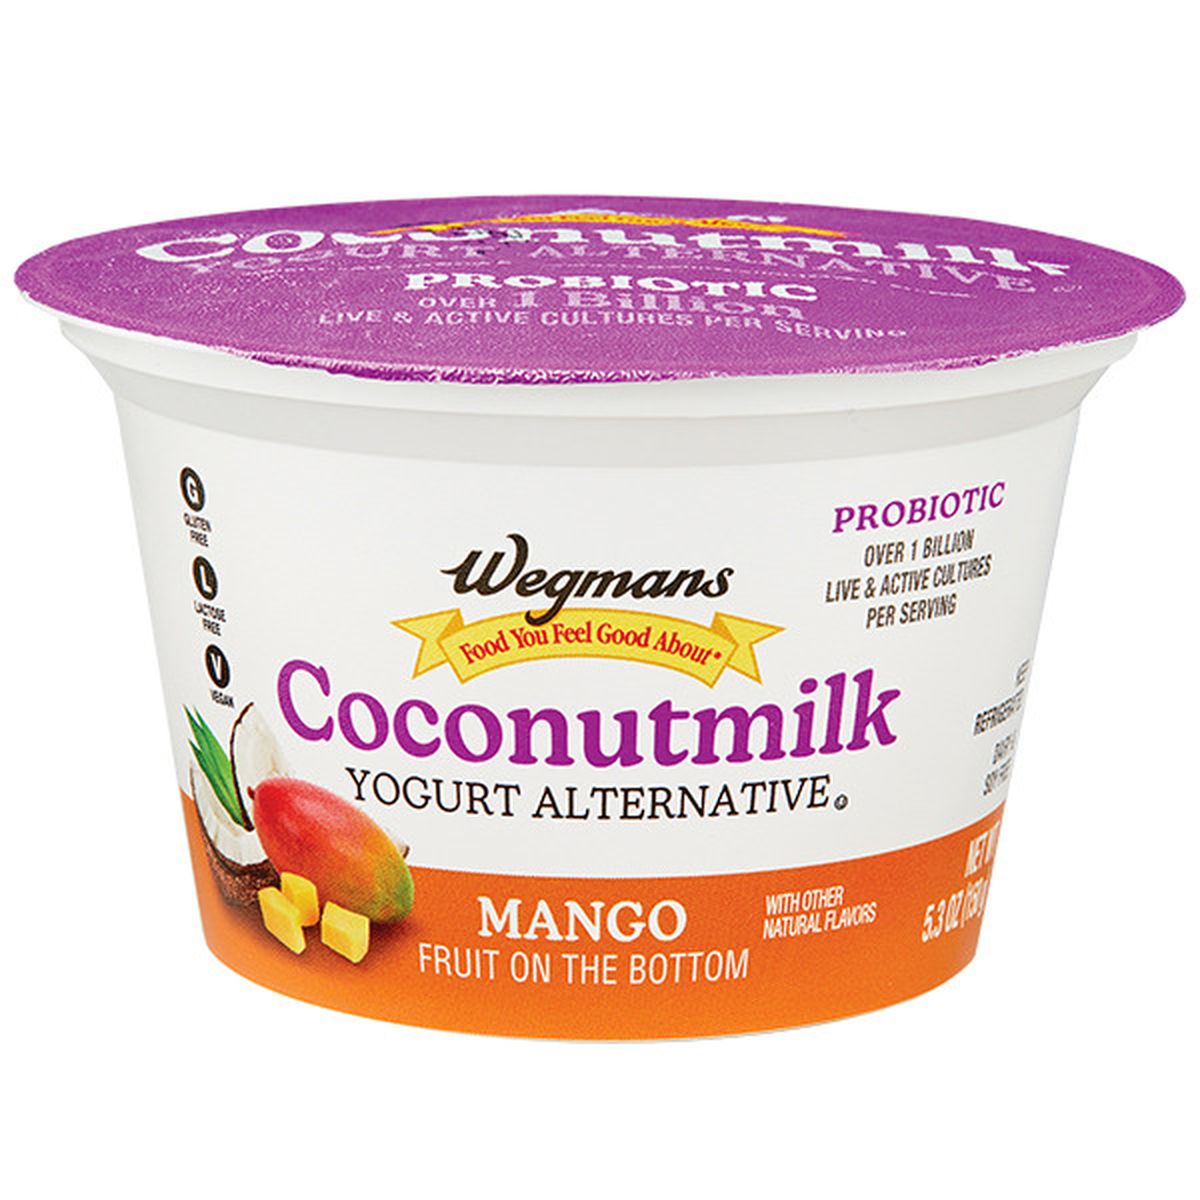 Calories in Wegmans Coconutmilk Yogurt Alternative, Mango